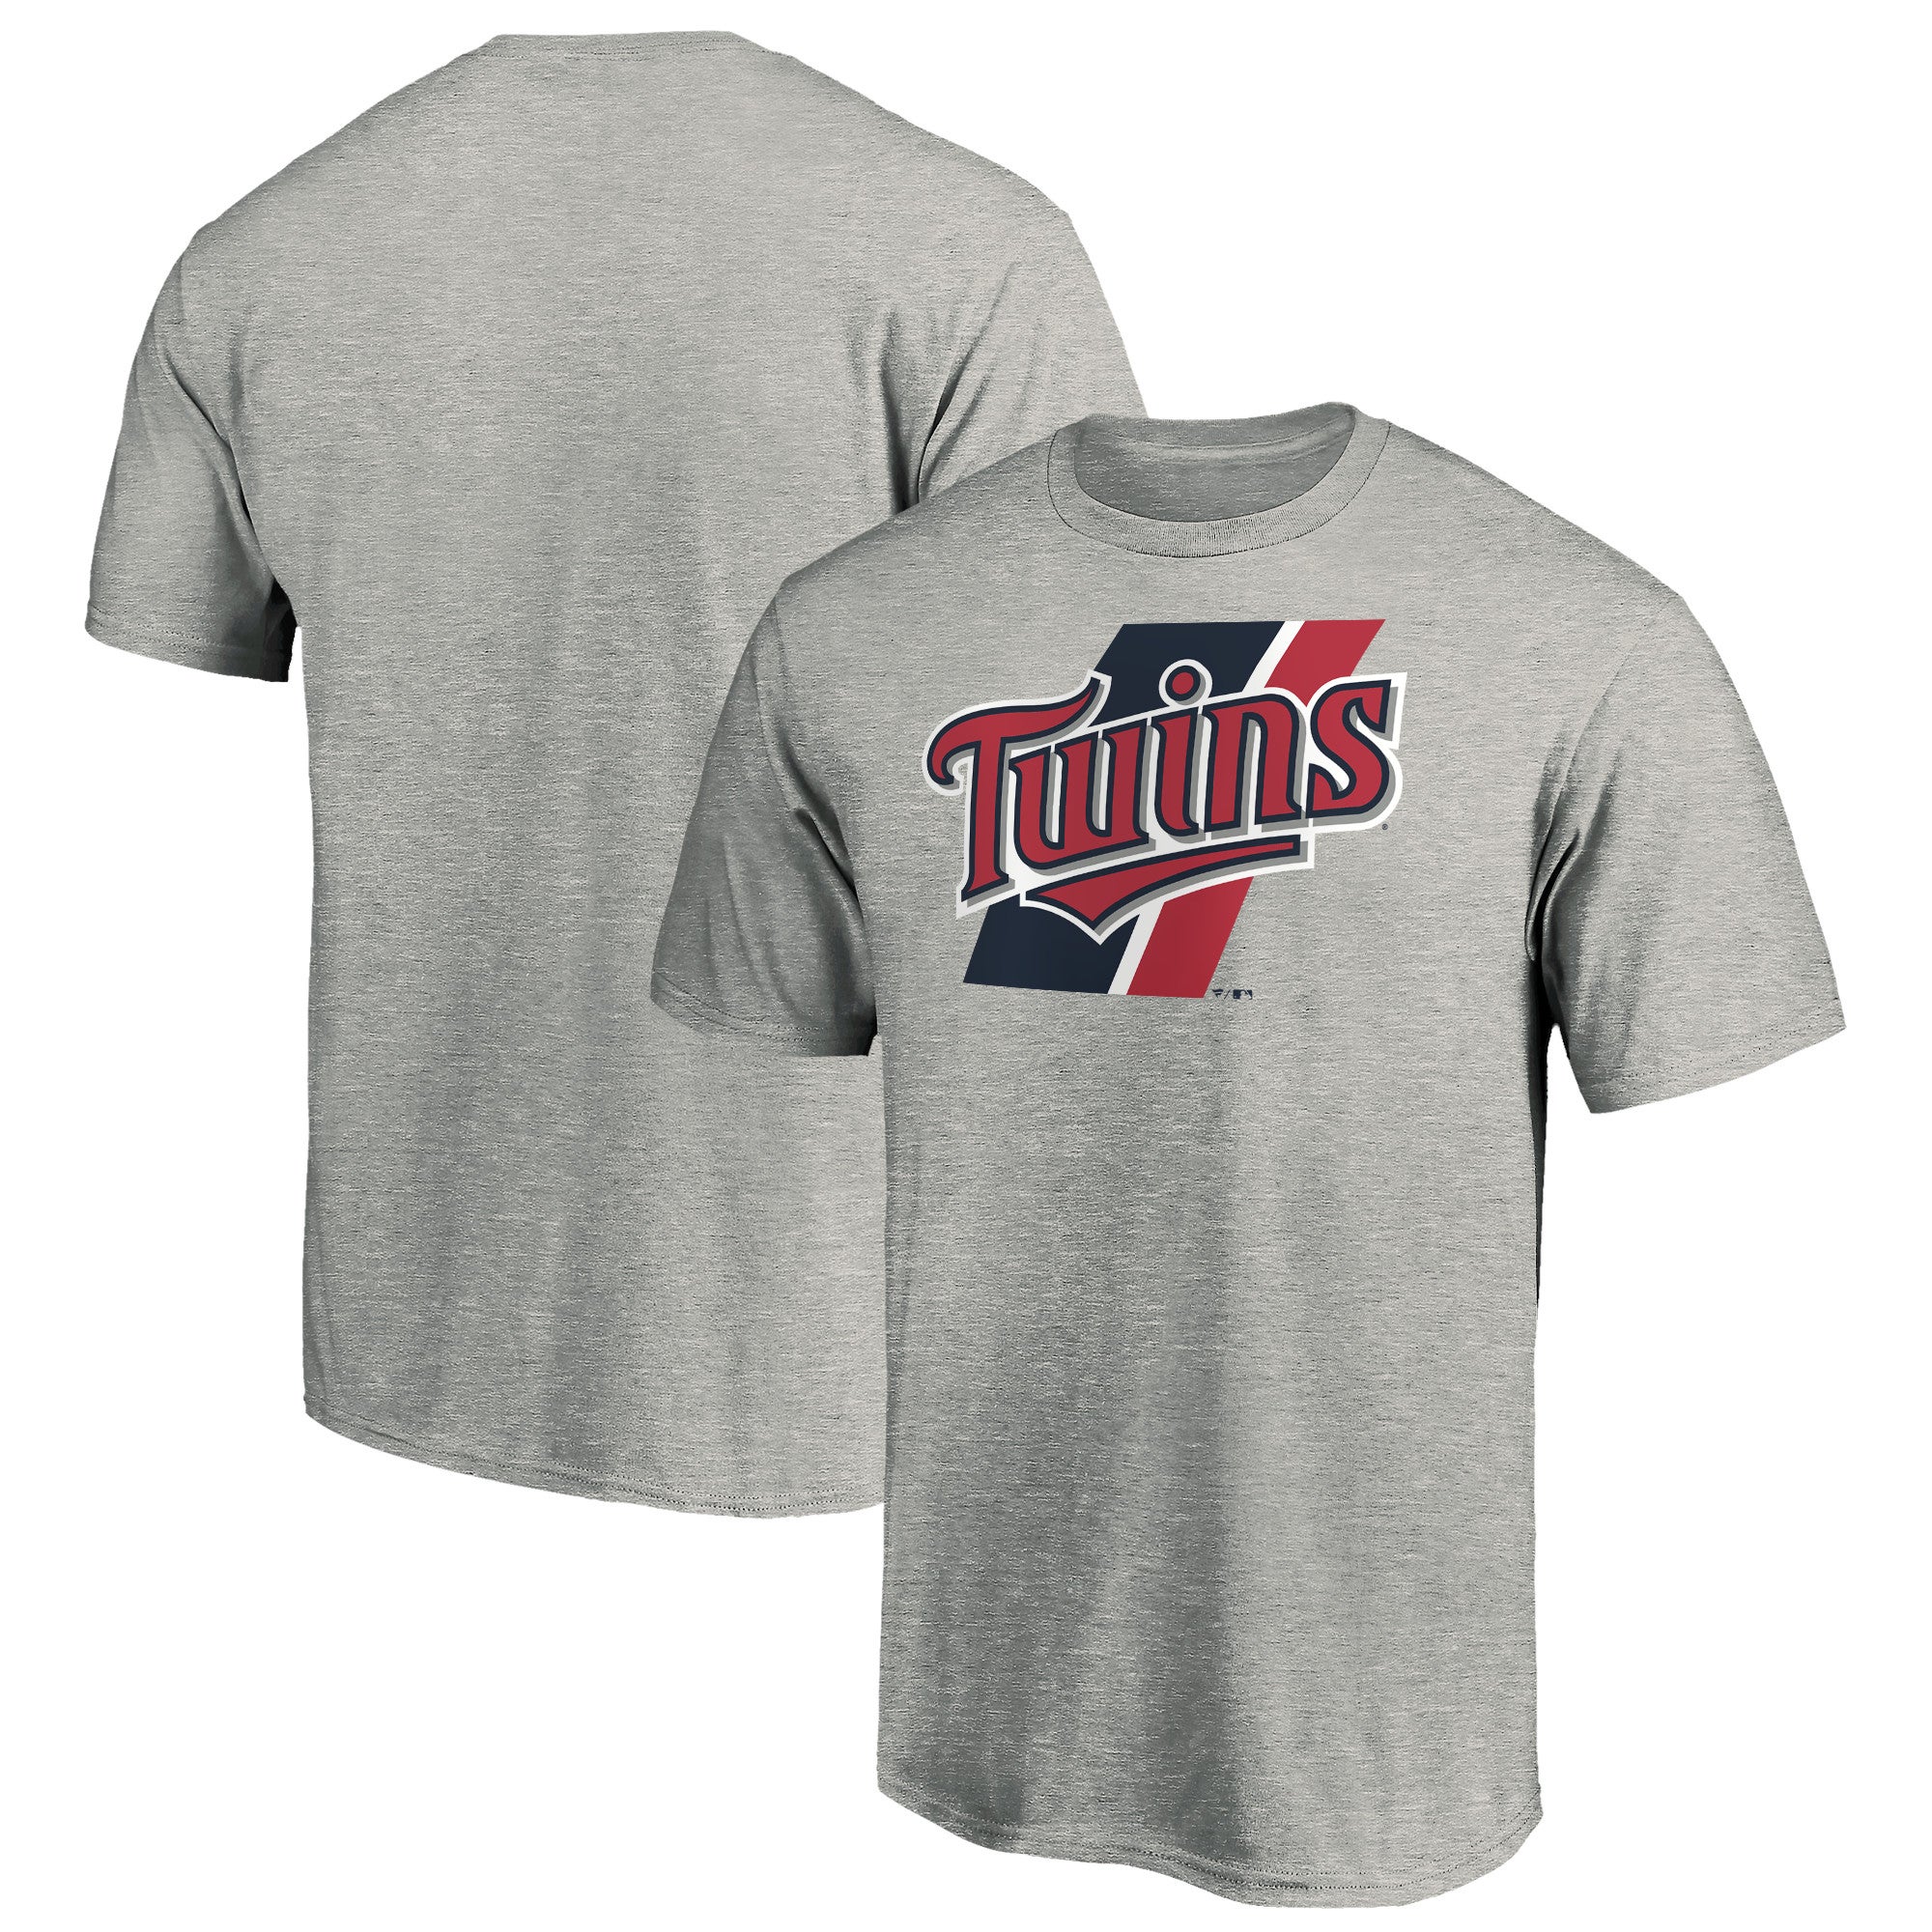 Fanatics Twins Prep Squad T-Shirt - Men's